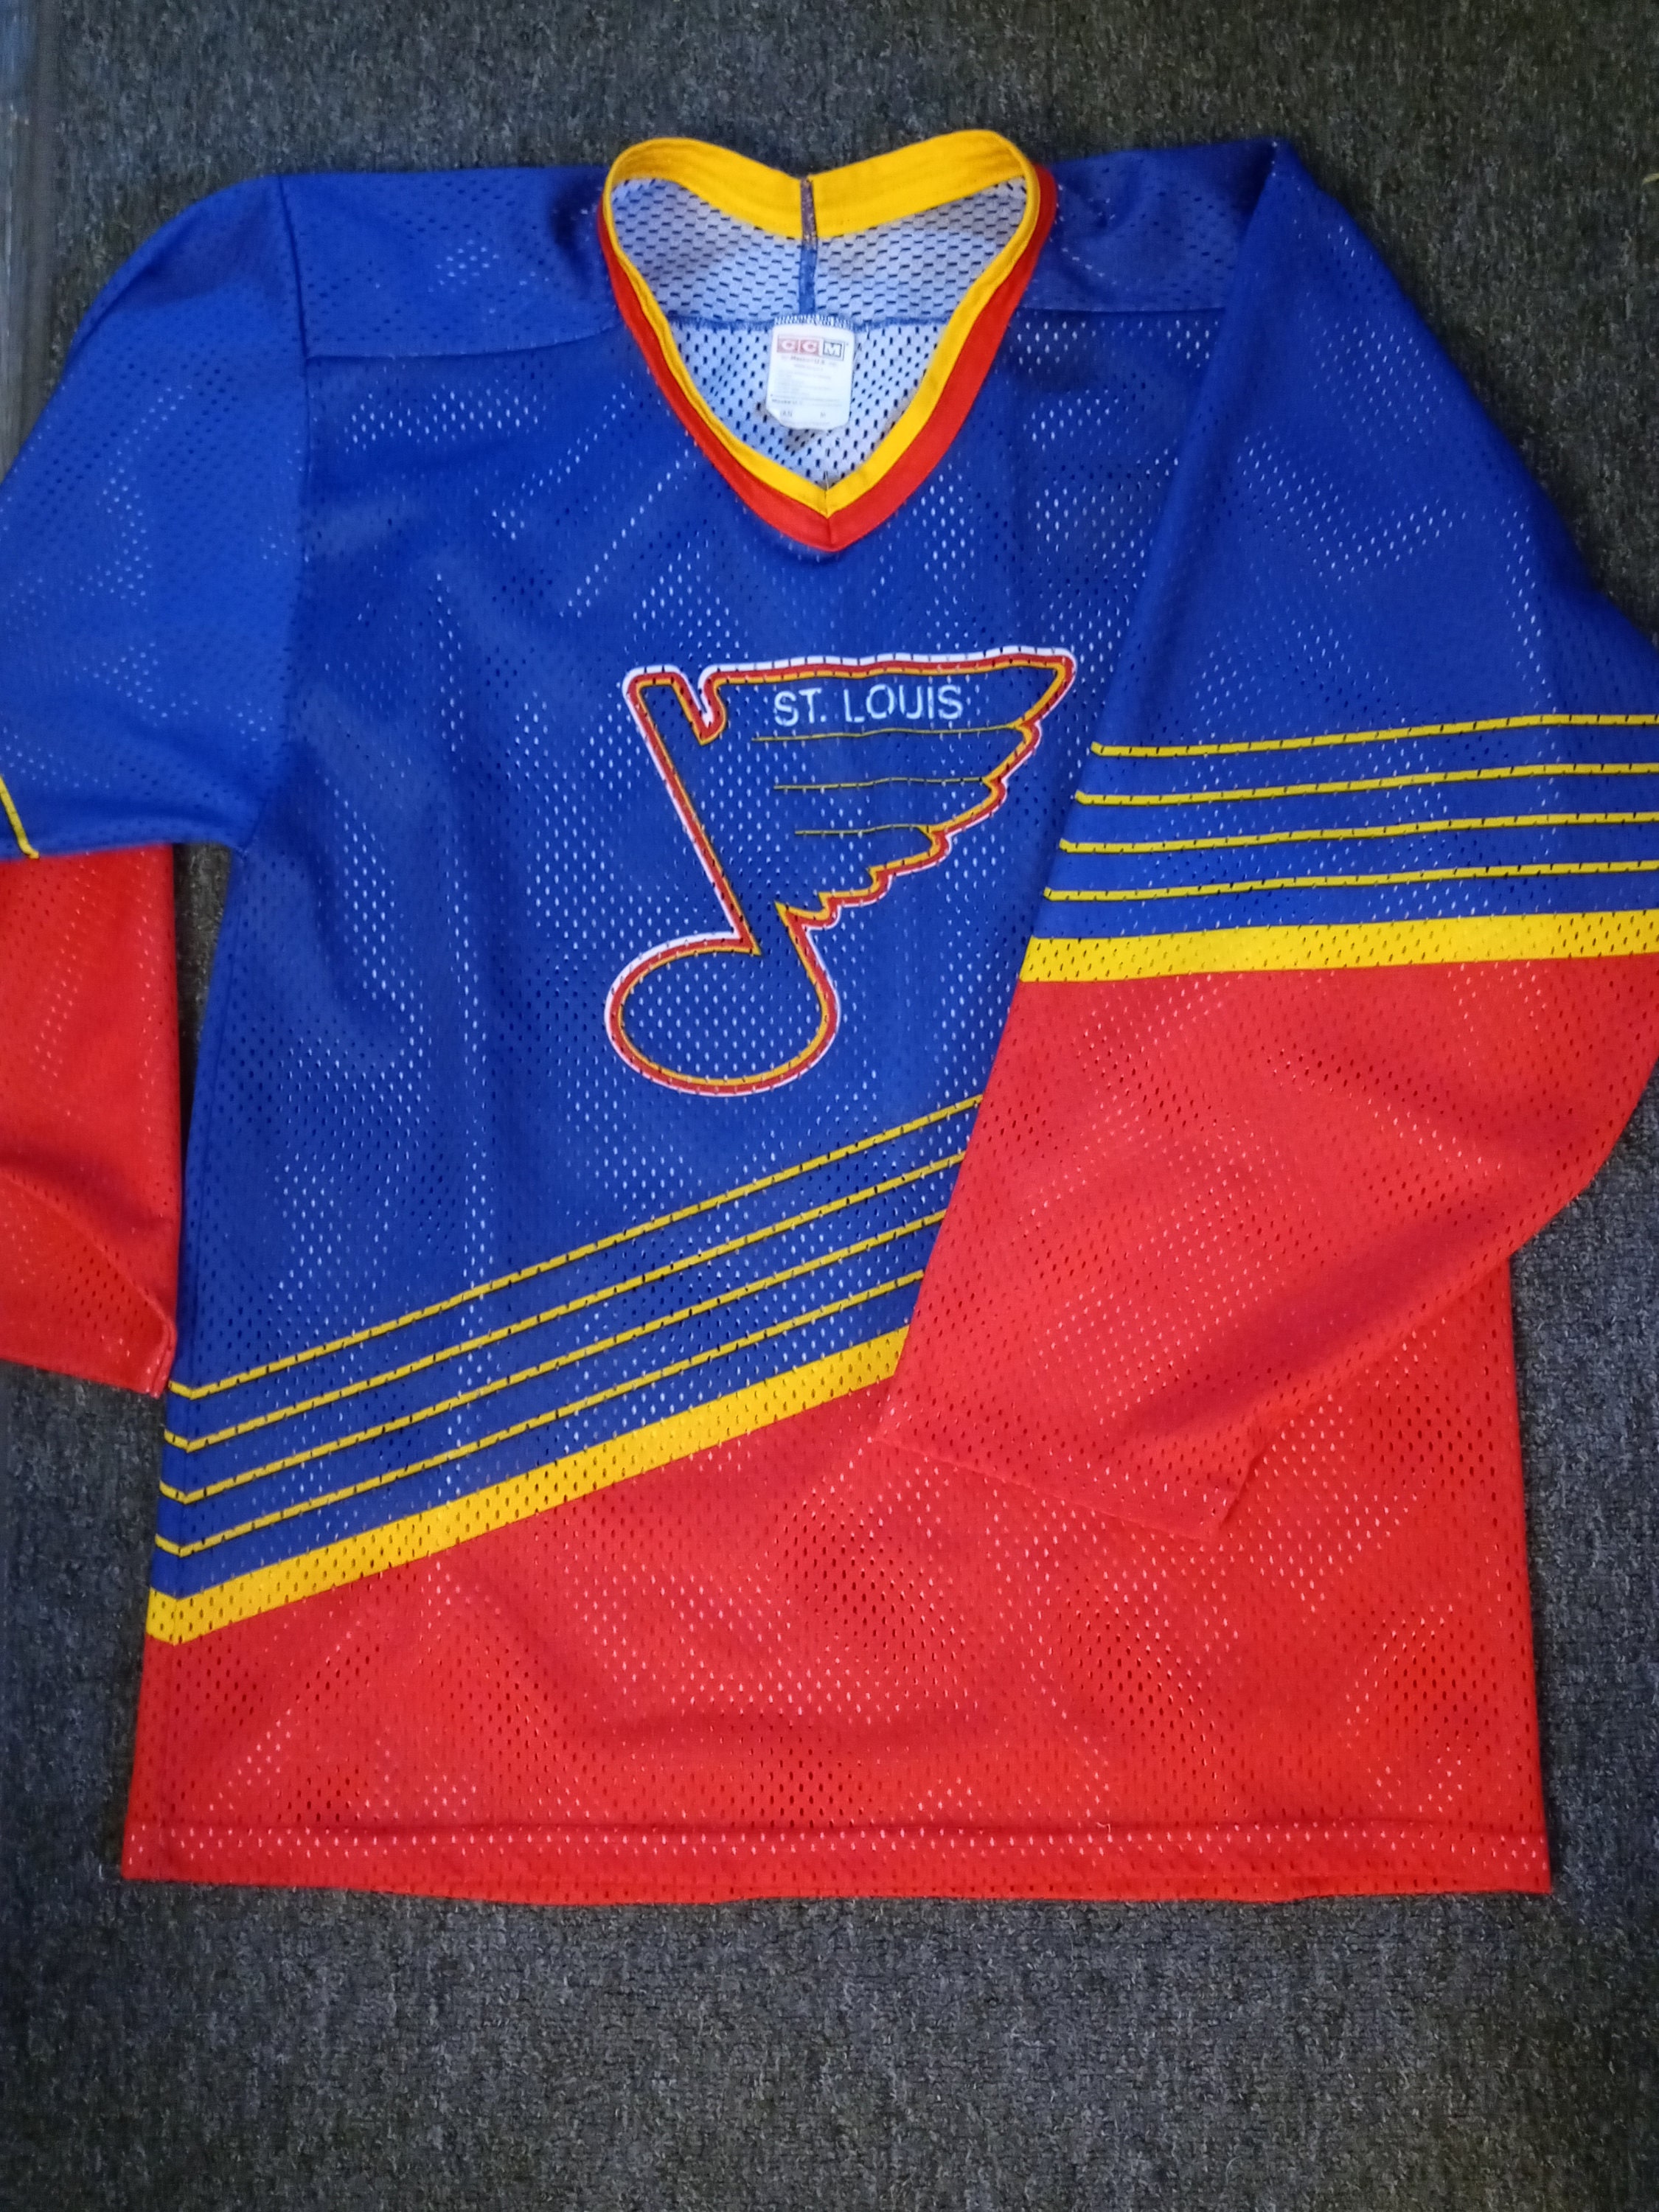 ST LOUIS BLUES 90s VINTAGE HOCKEY SHIRT JERSEY CCM sz XL NHL